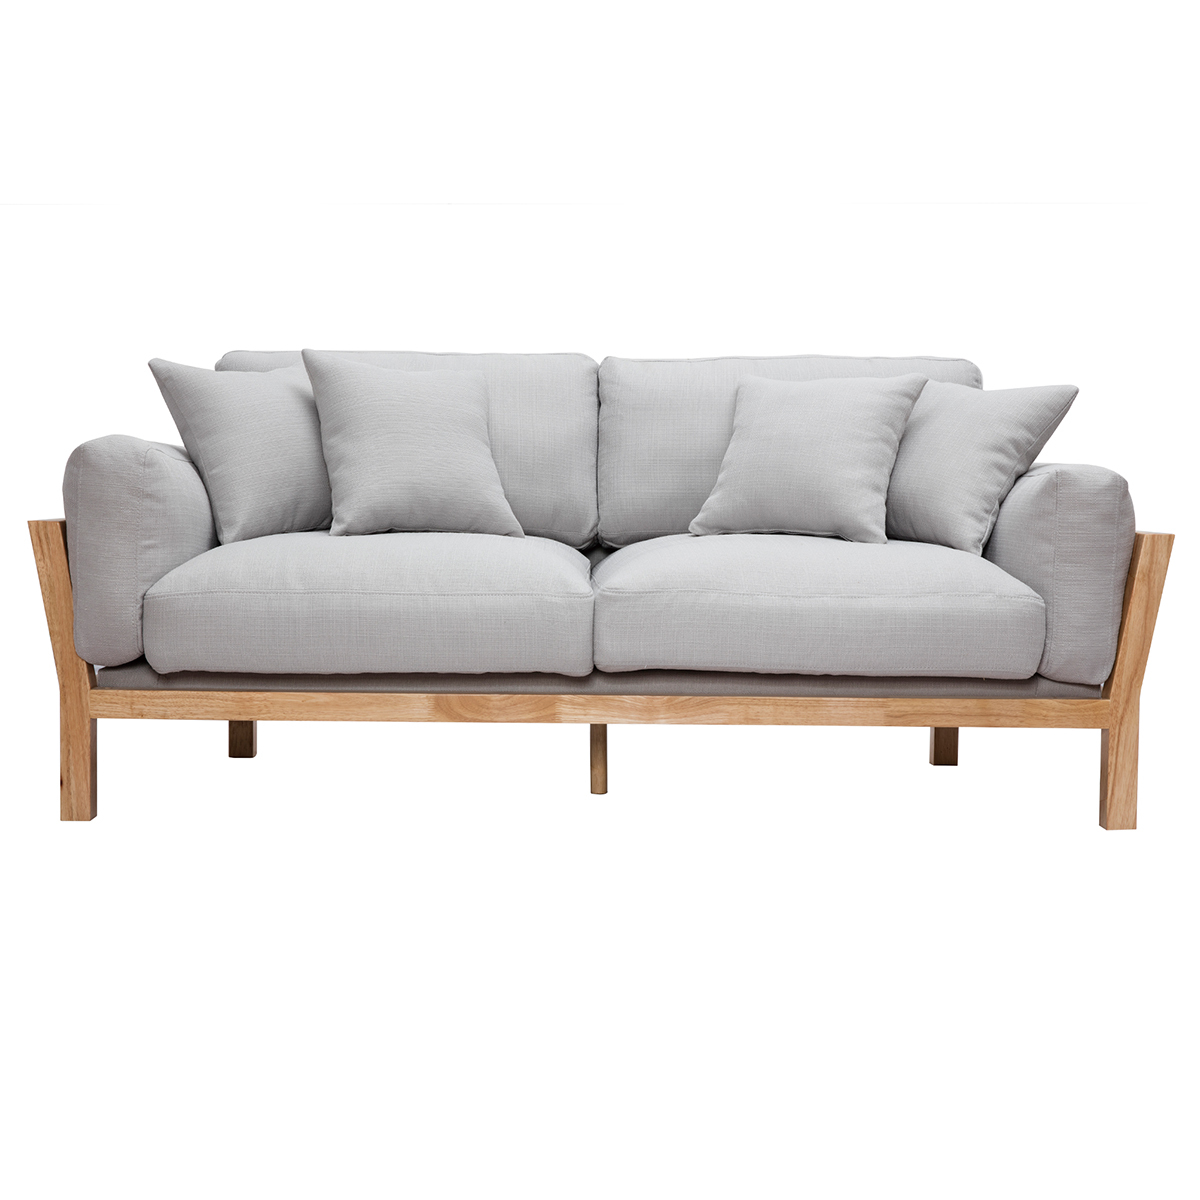 Canapé scandinave déhoussable 3 places en tissu gris clair et bois clair KYO vue1